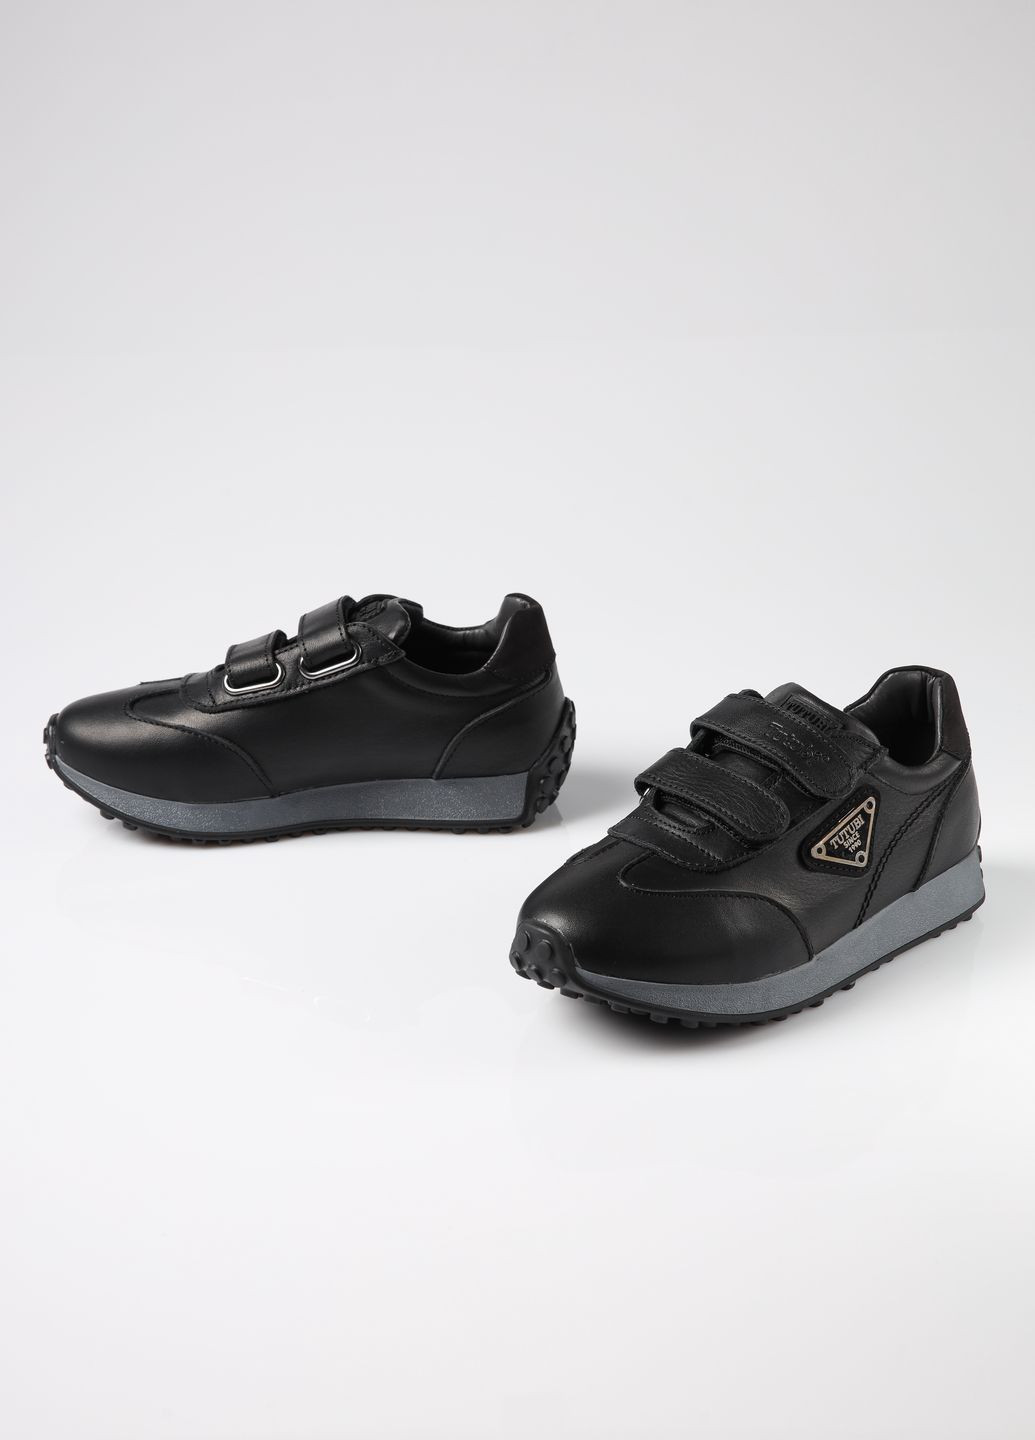 Черные демисезонные кроссовки из натуральной кожи для мальчика 8958 27 17см черный 66230 Tutubi